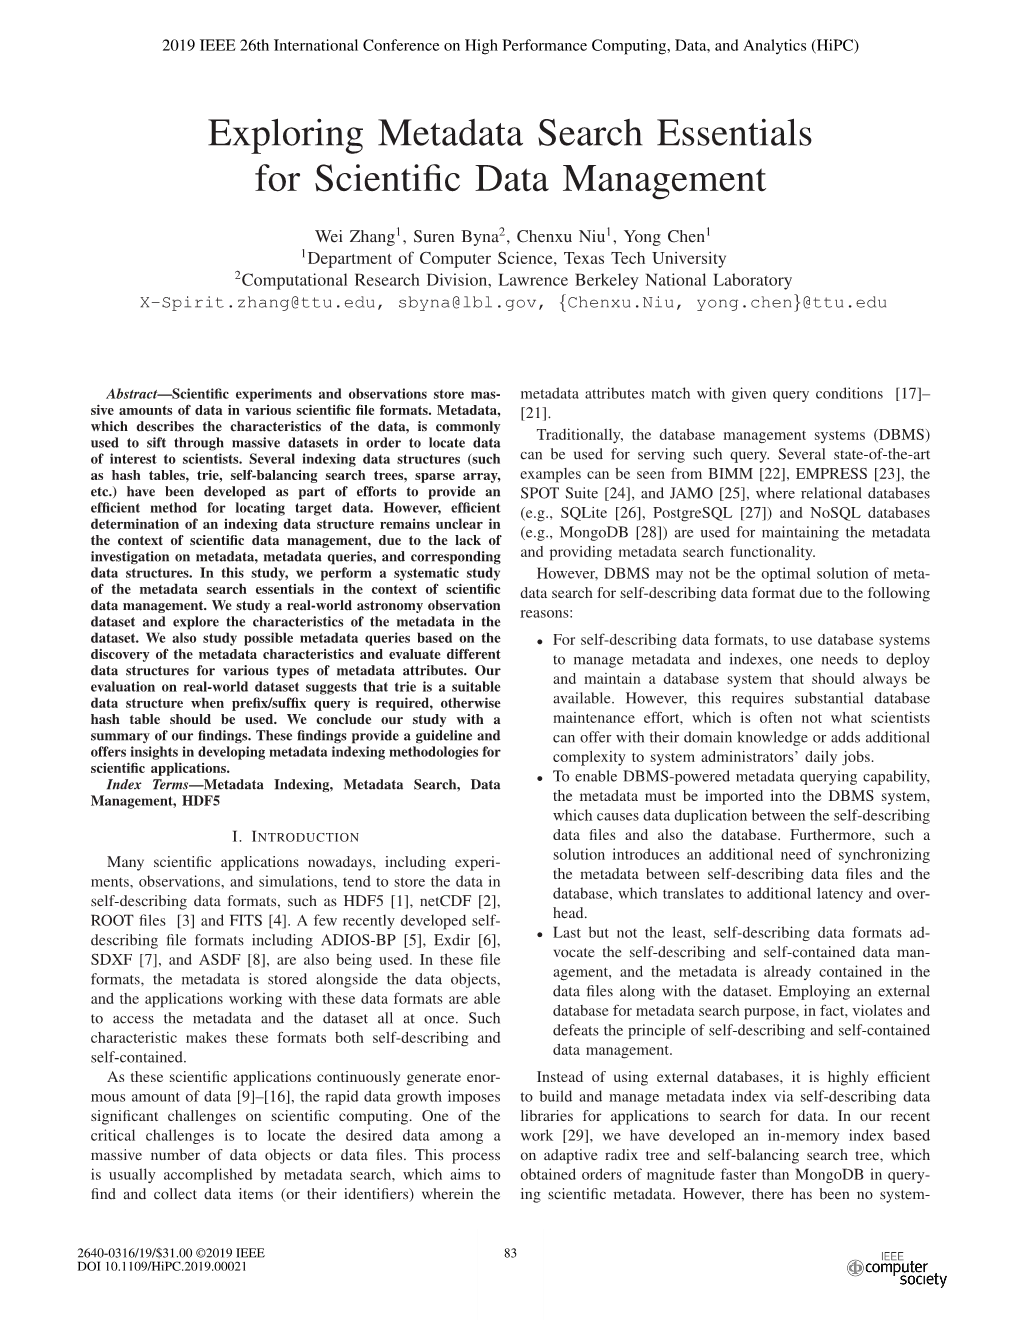 Exploring Metadata Search Essentials for Scientific Data Management